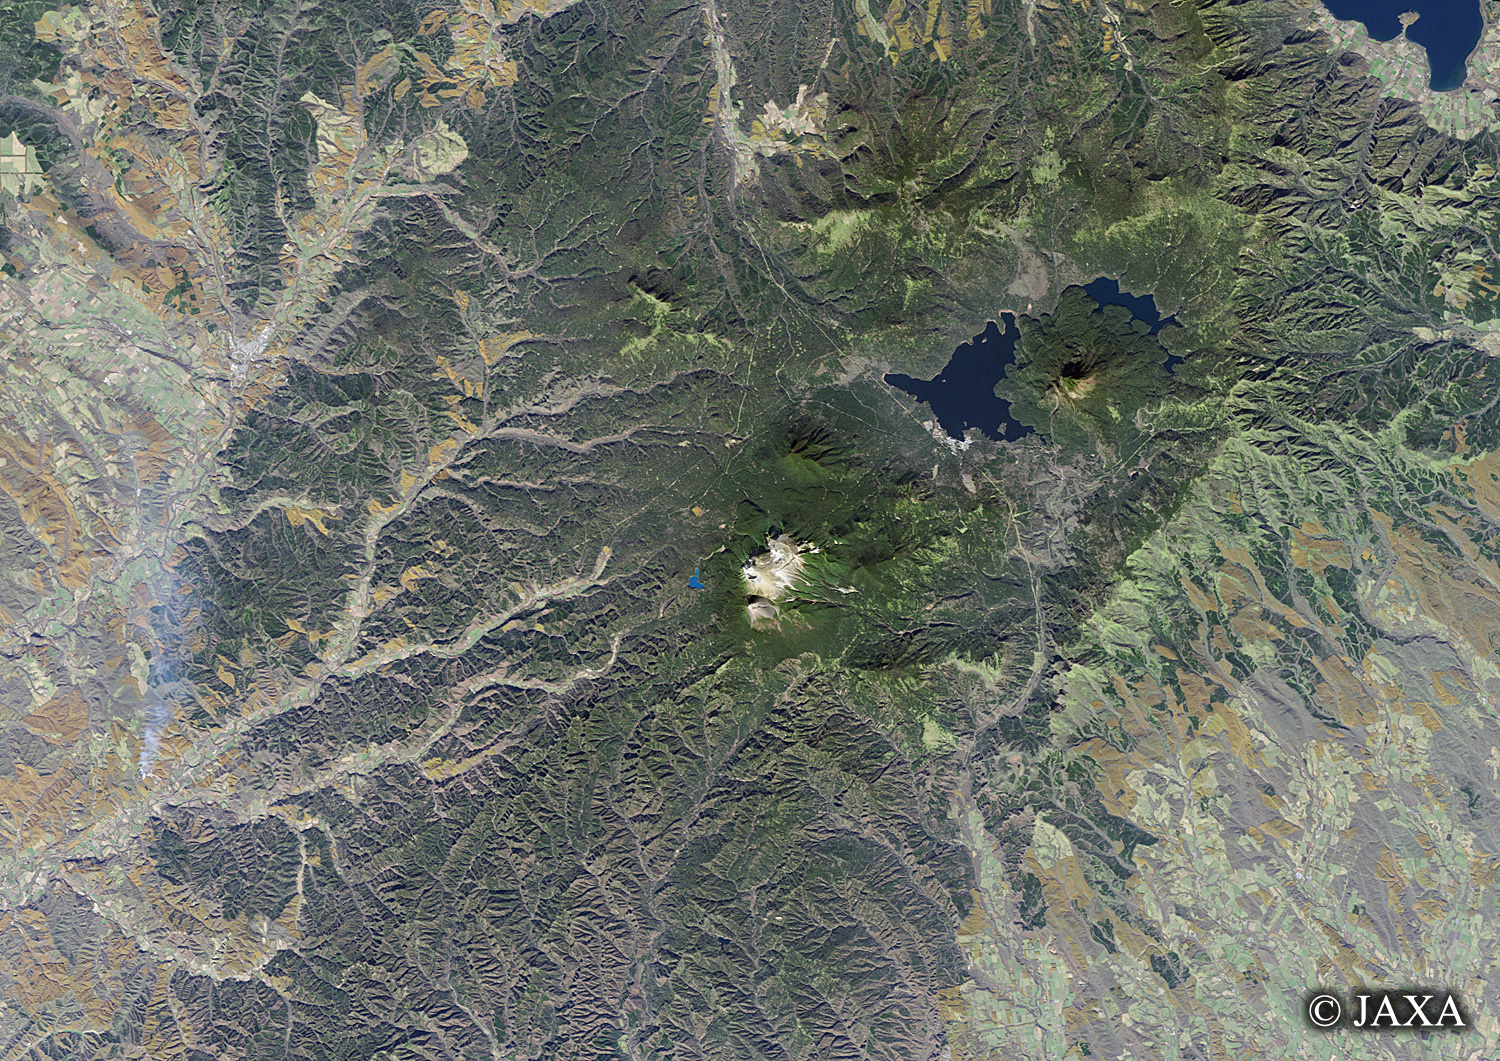 だいちから見た日本の都市 雄阿寒岳・雌阿寒岳:衛星画像